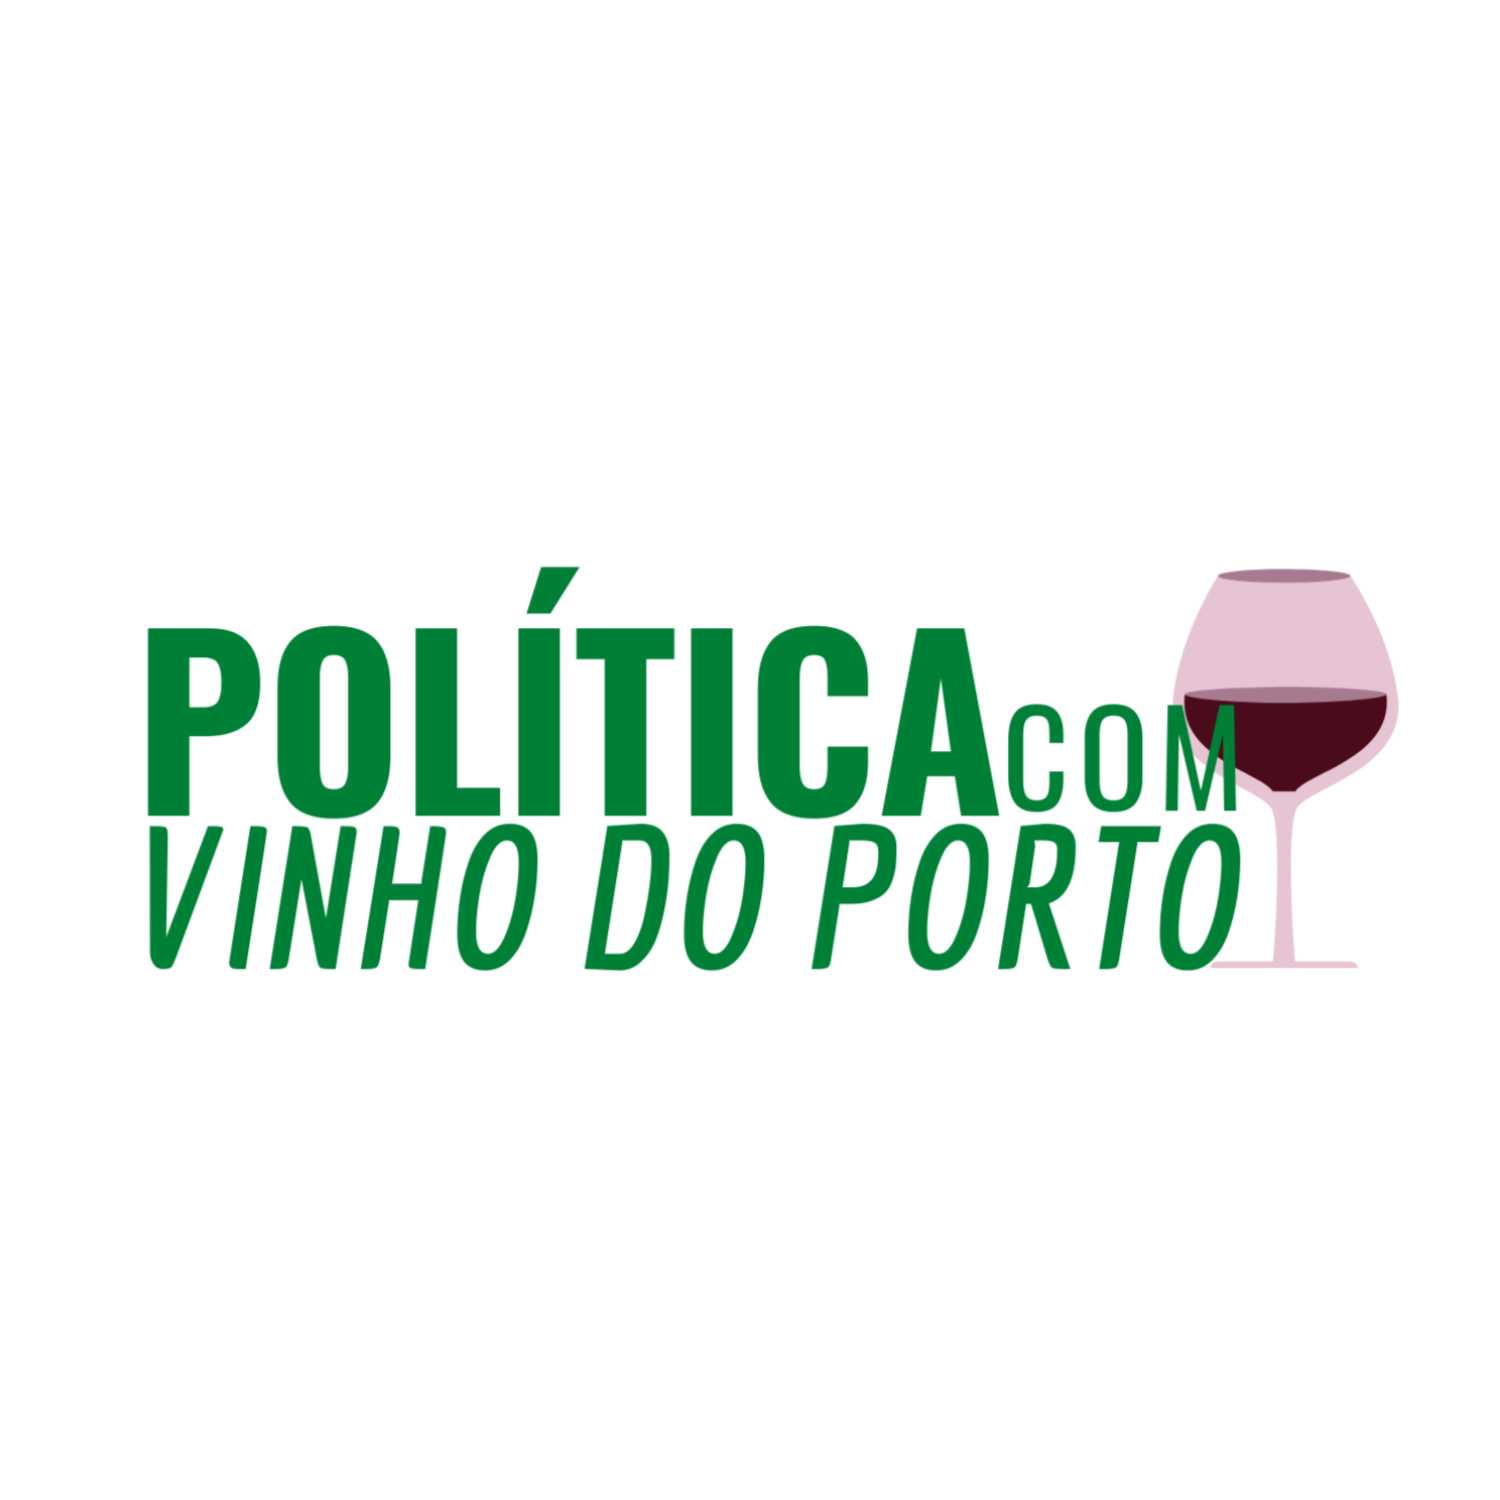 Política com Vinho do Porto